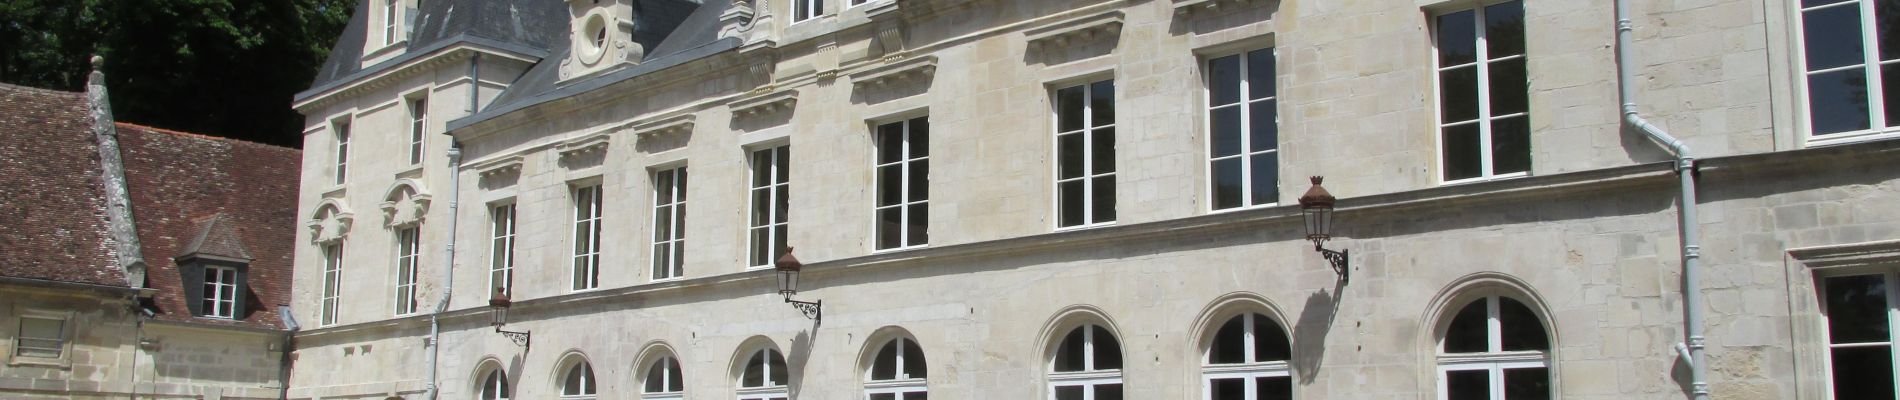 Point d'intérêt Verberie - Château d'Aramont - Photo